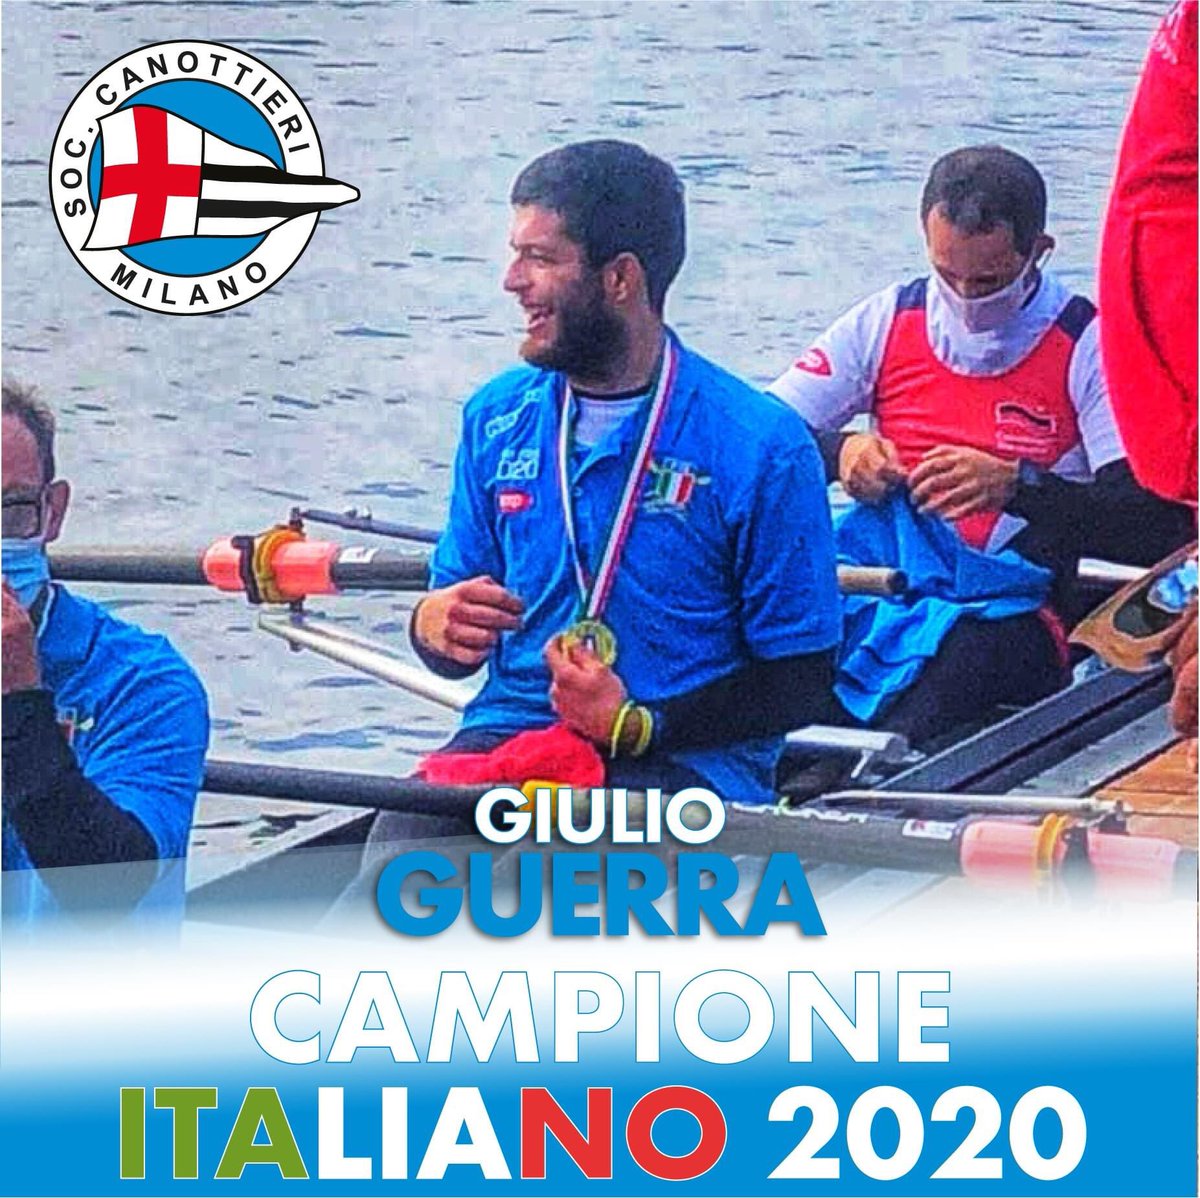 #supercampionatoitaliano #canottaggio #rowing #campioneitaliano @Canottieri_Mi @canottaggio1888